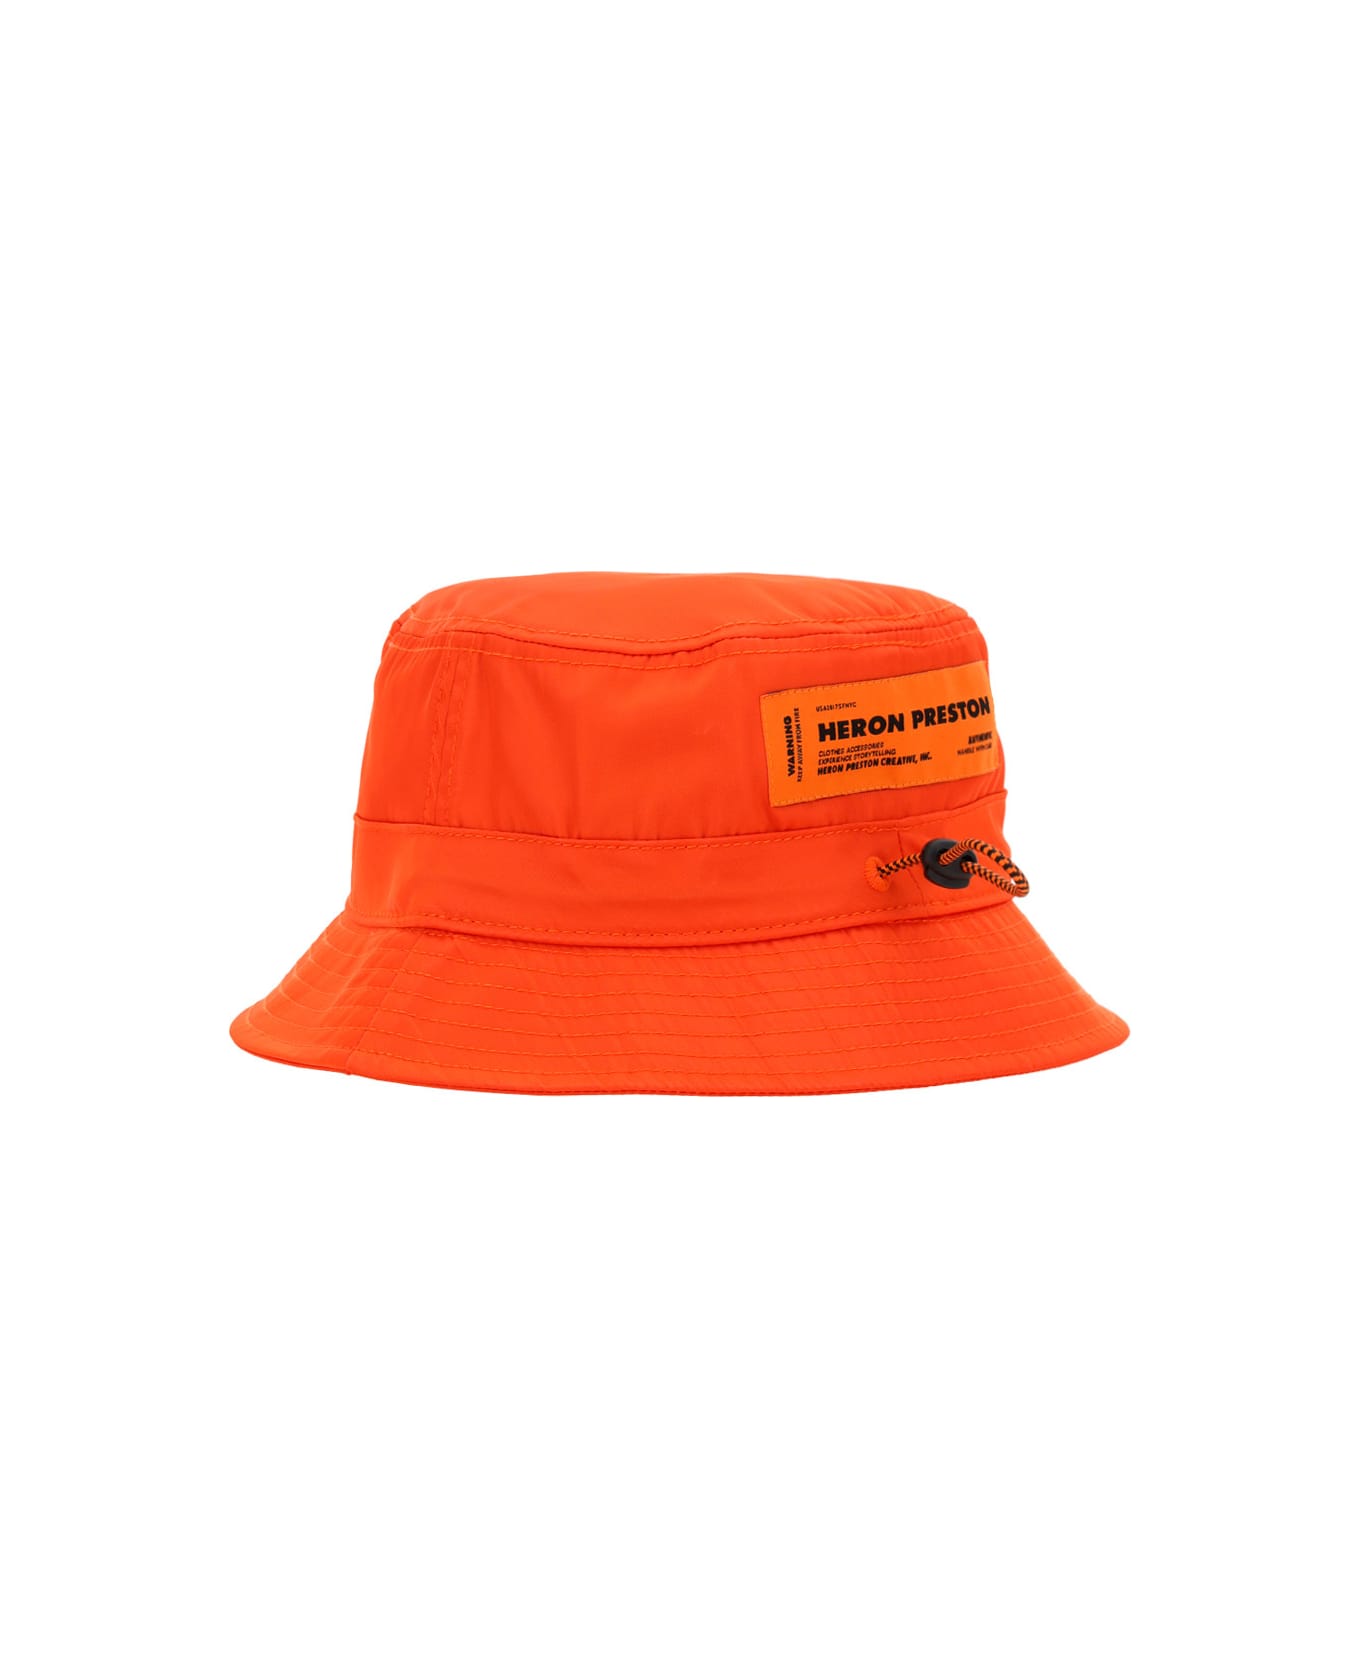 HERON PRESTON Bucket Hat - Orange/white